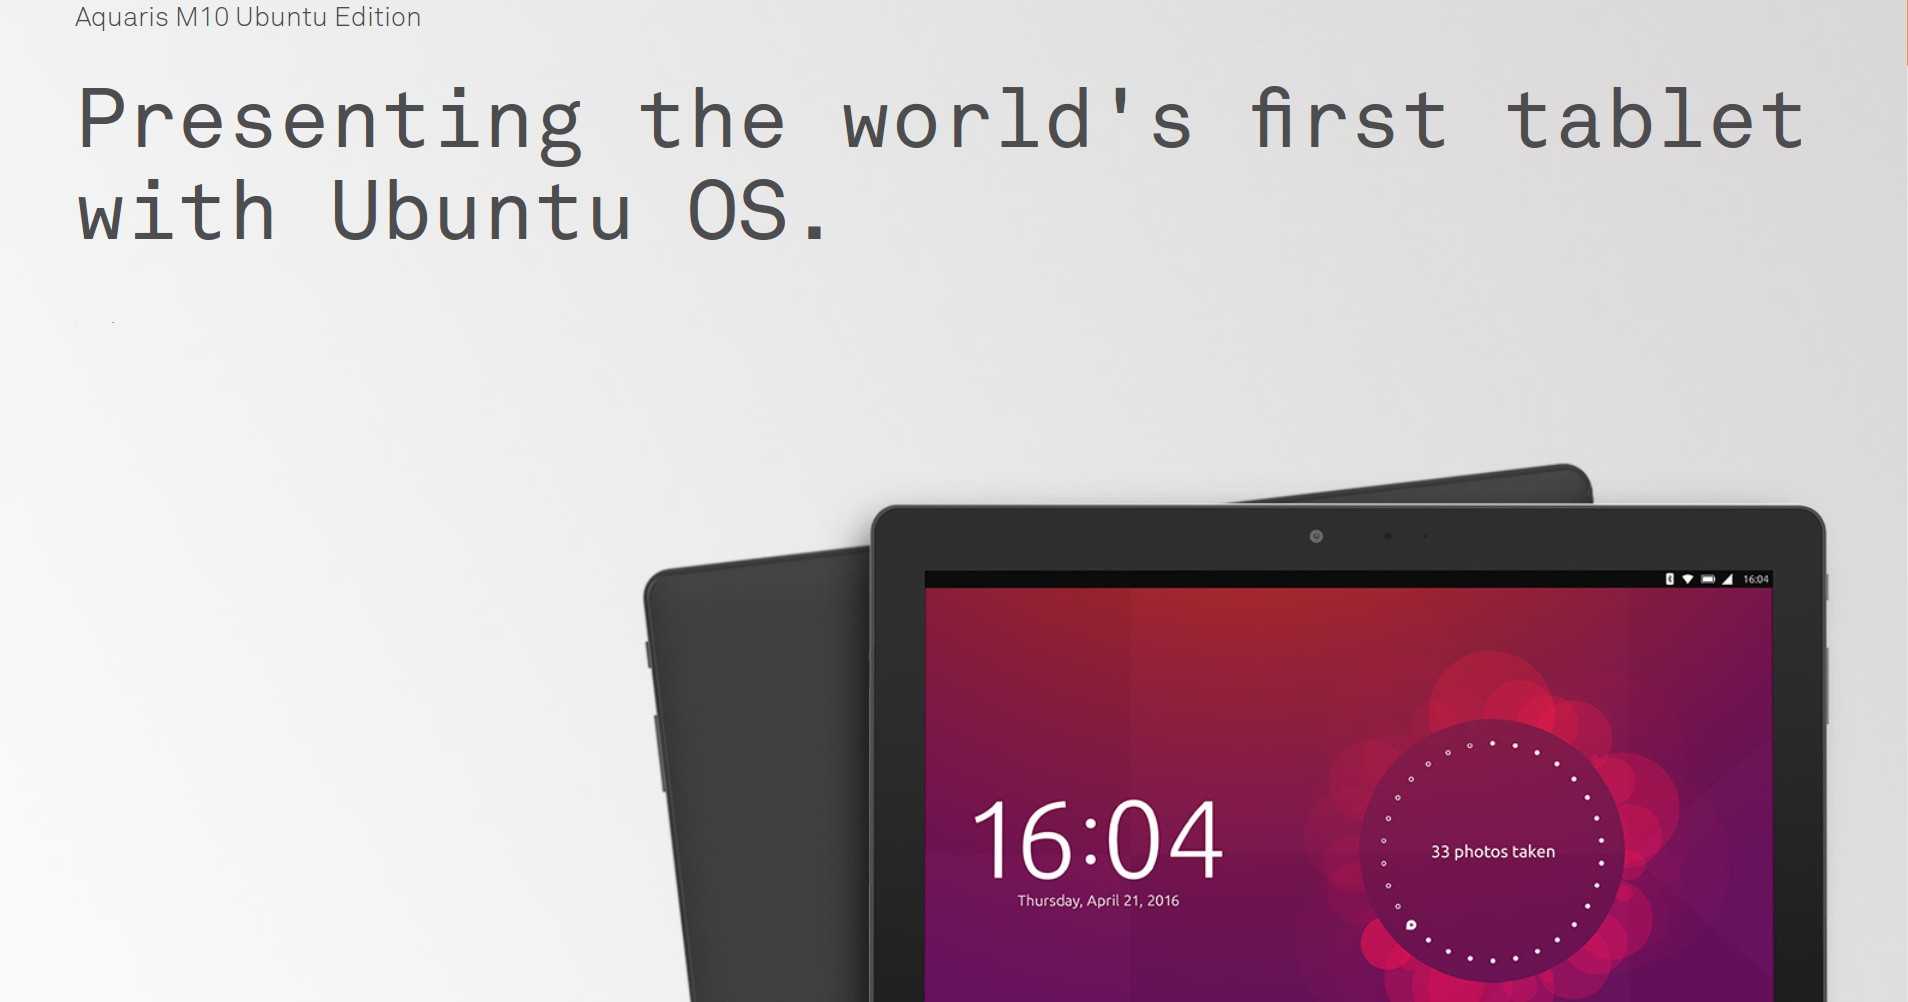 Обзор bq aquaris m10 ubuntu edition — для чего и для кого этот планшет?